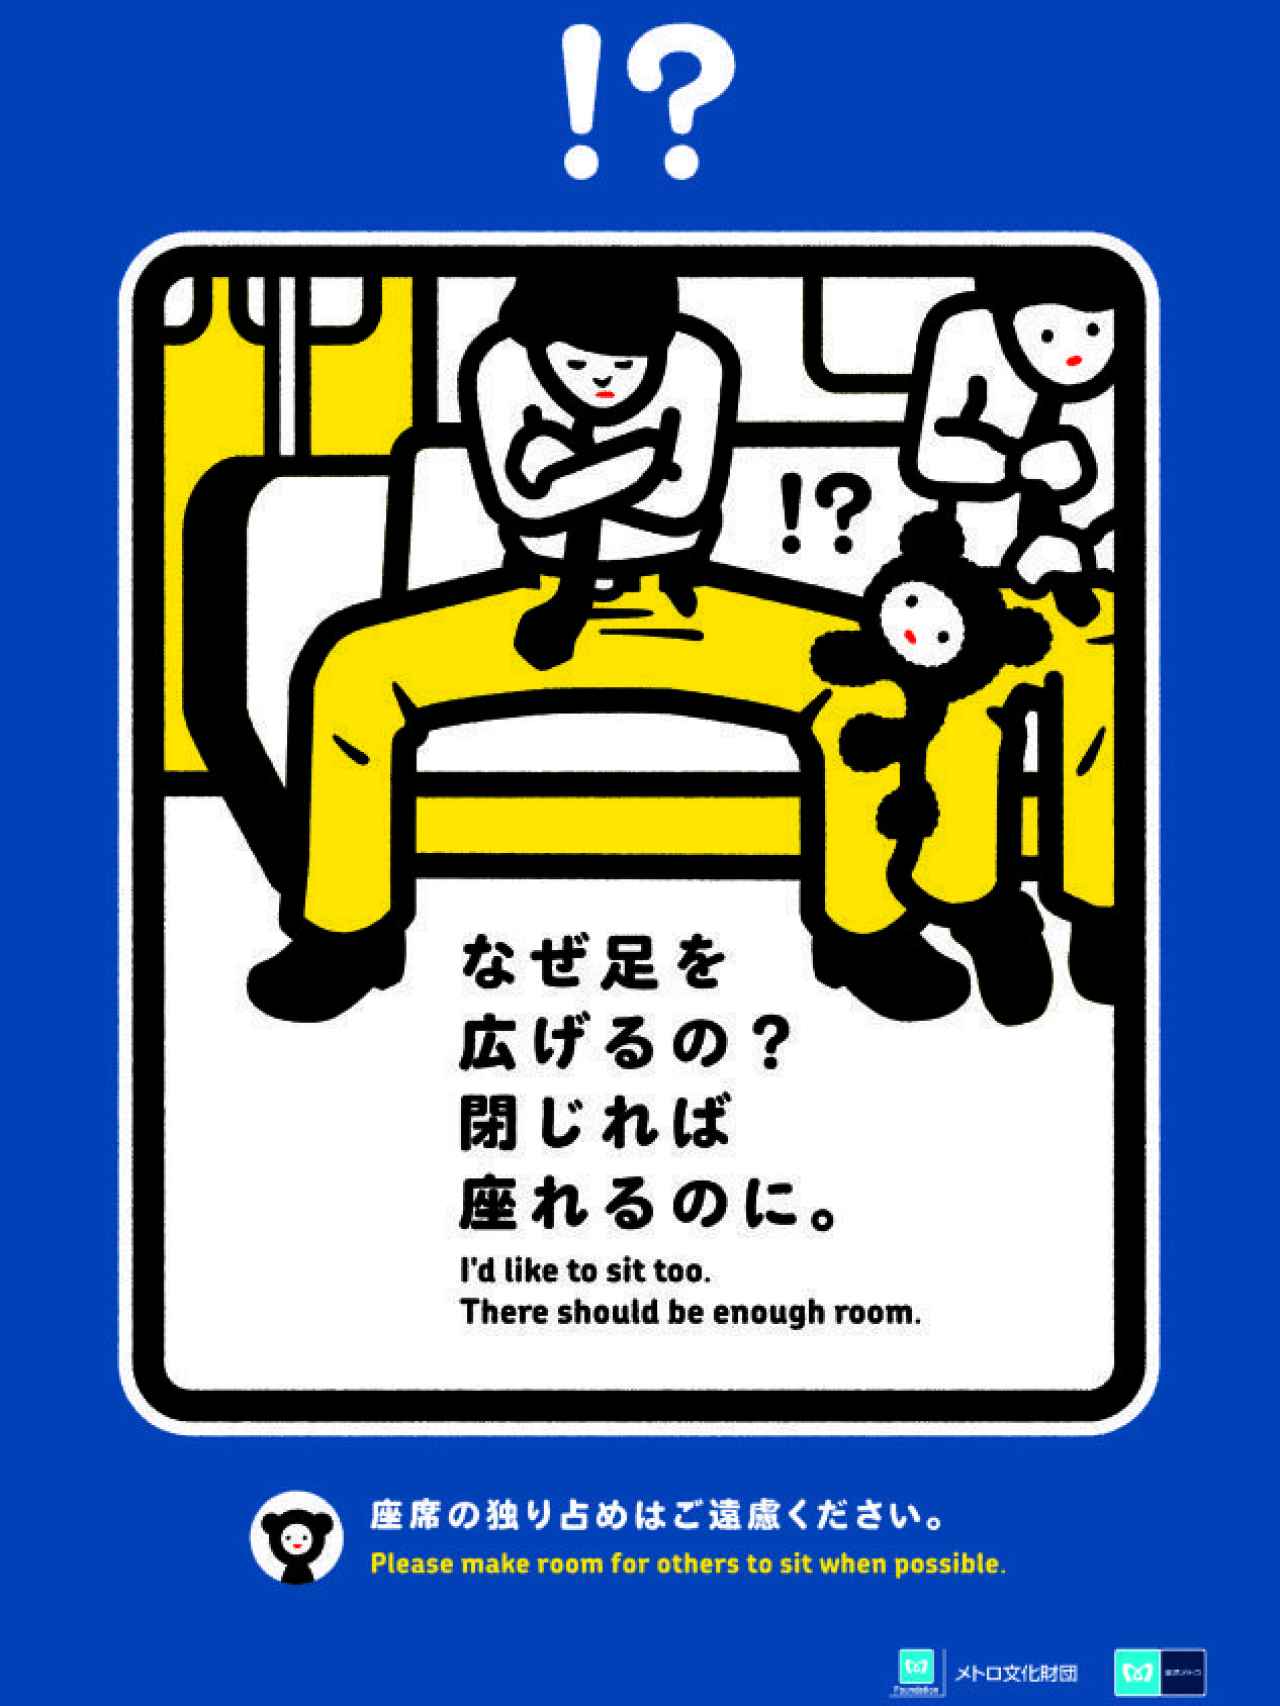 Cartel para una campaña en el metro de Tokio